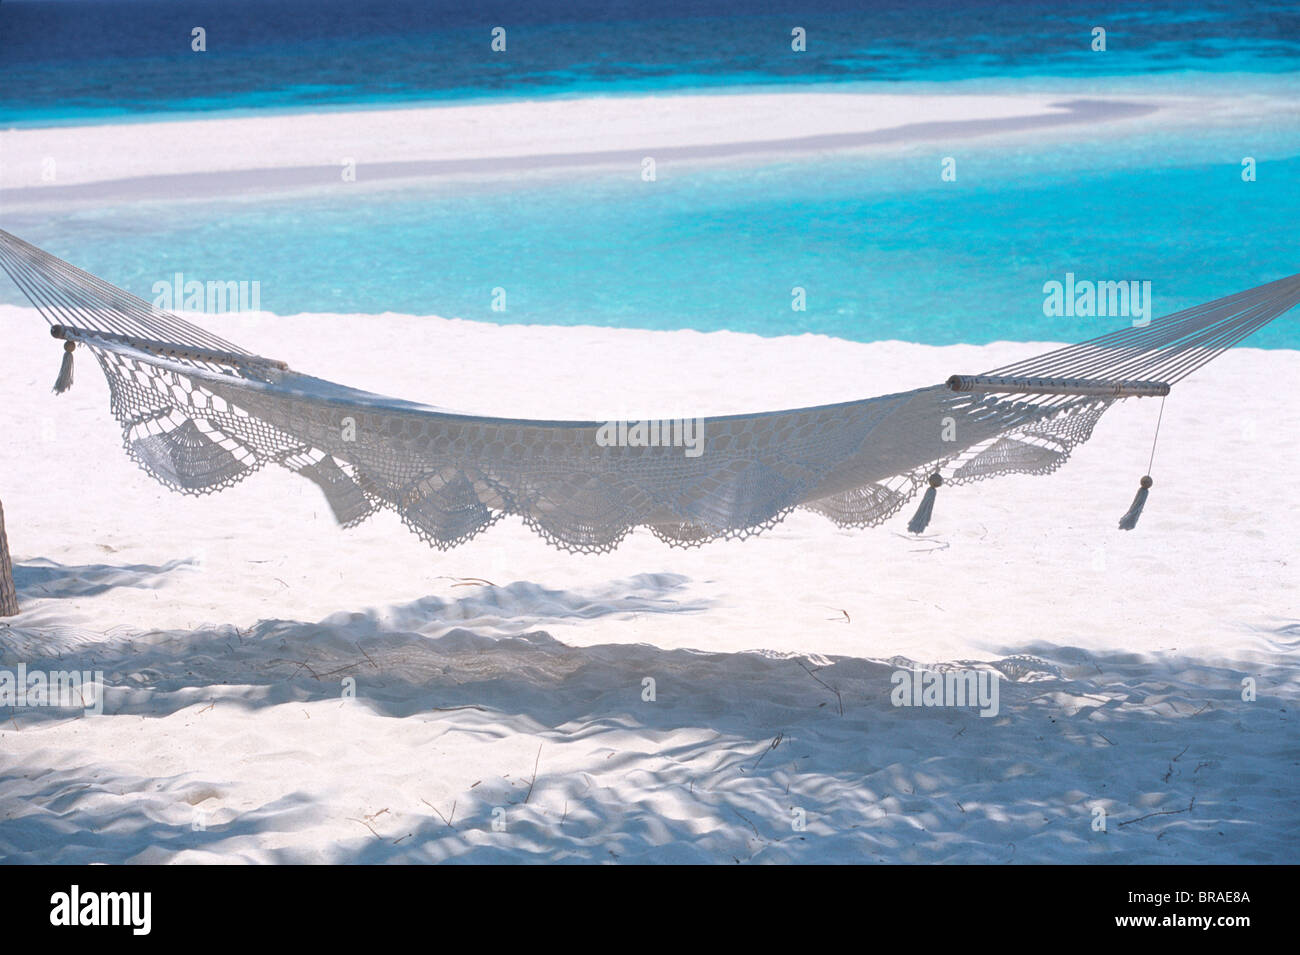 Hängematte am Strand, Malediven, Indischer Ozean, Asien Stockfoto